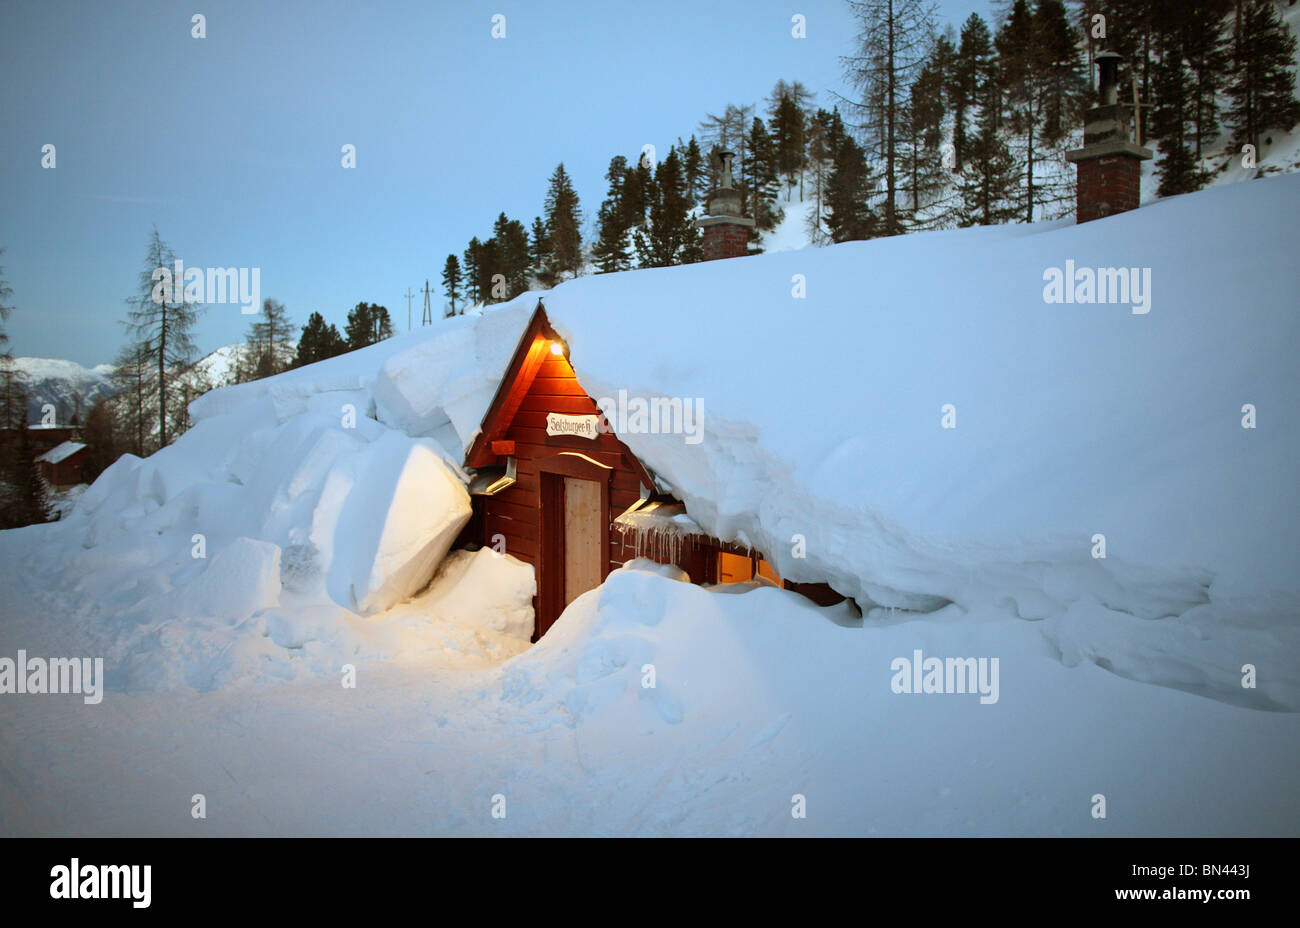 Cabane en bois sous des masses de neige, Krippenbrunn, Autriche Banque D'Images